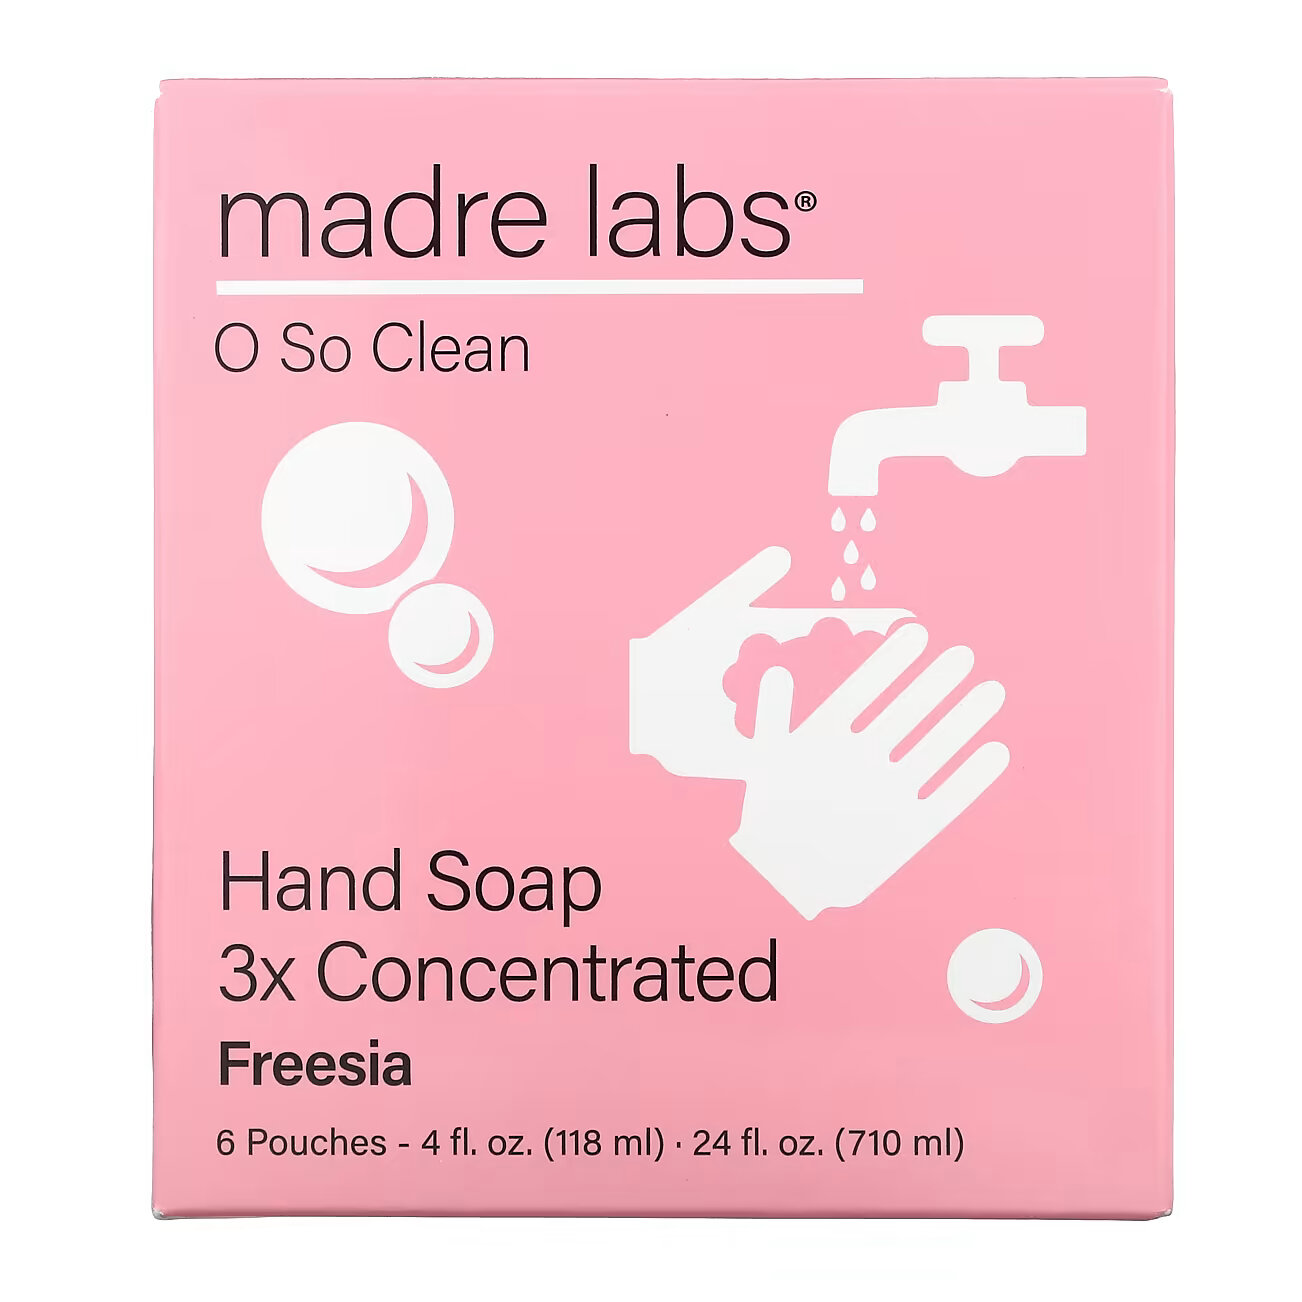 Мыло для рук Madre Labs тройной концентрации, 118 мл мыло для рук madre labs тройной концентрации 118 мл